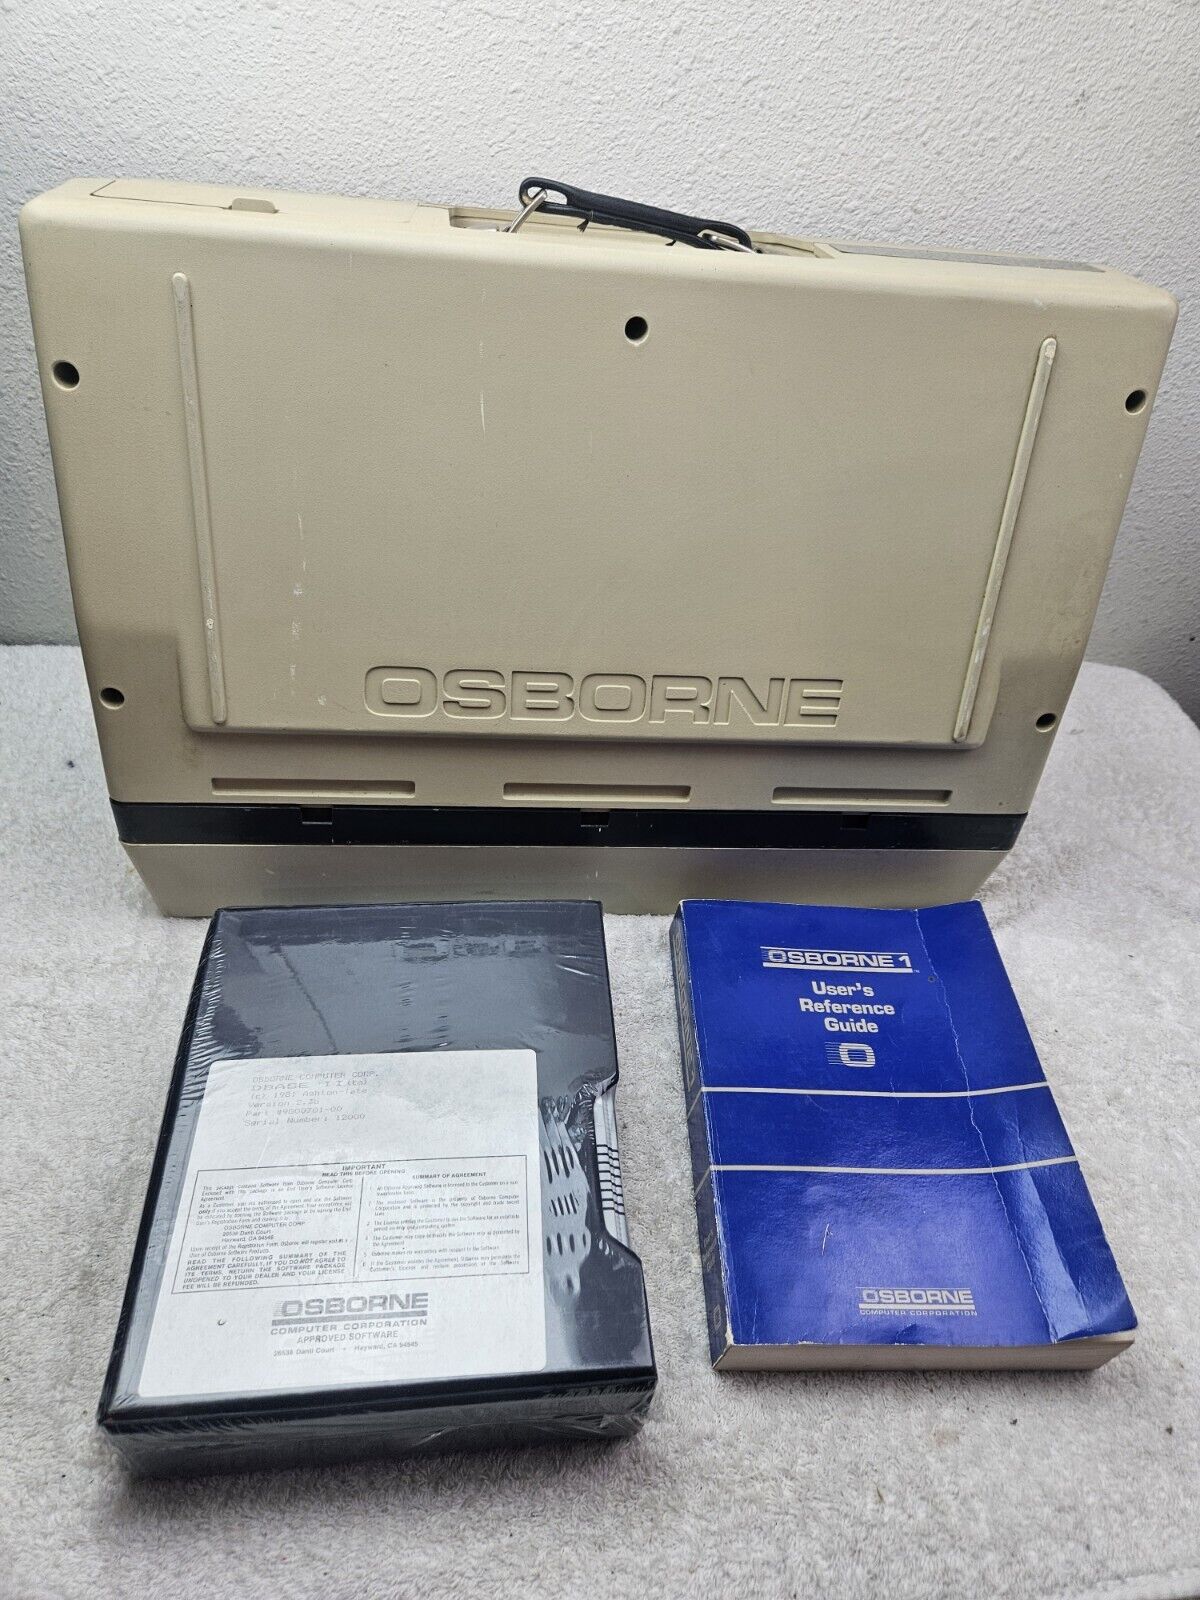 VINTAGE OSBORNE COMPUTER  10- 20-1982 SERIAL # 004319  SEALED SOFTWARE TURNS ON